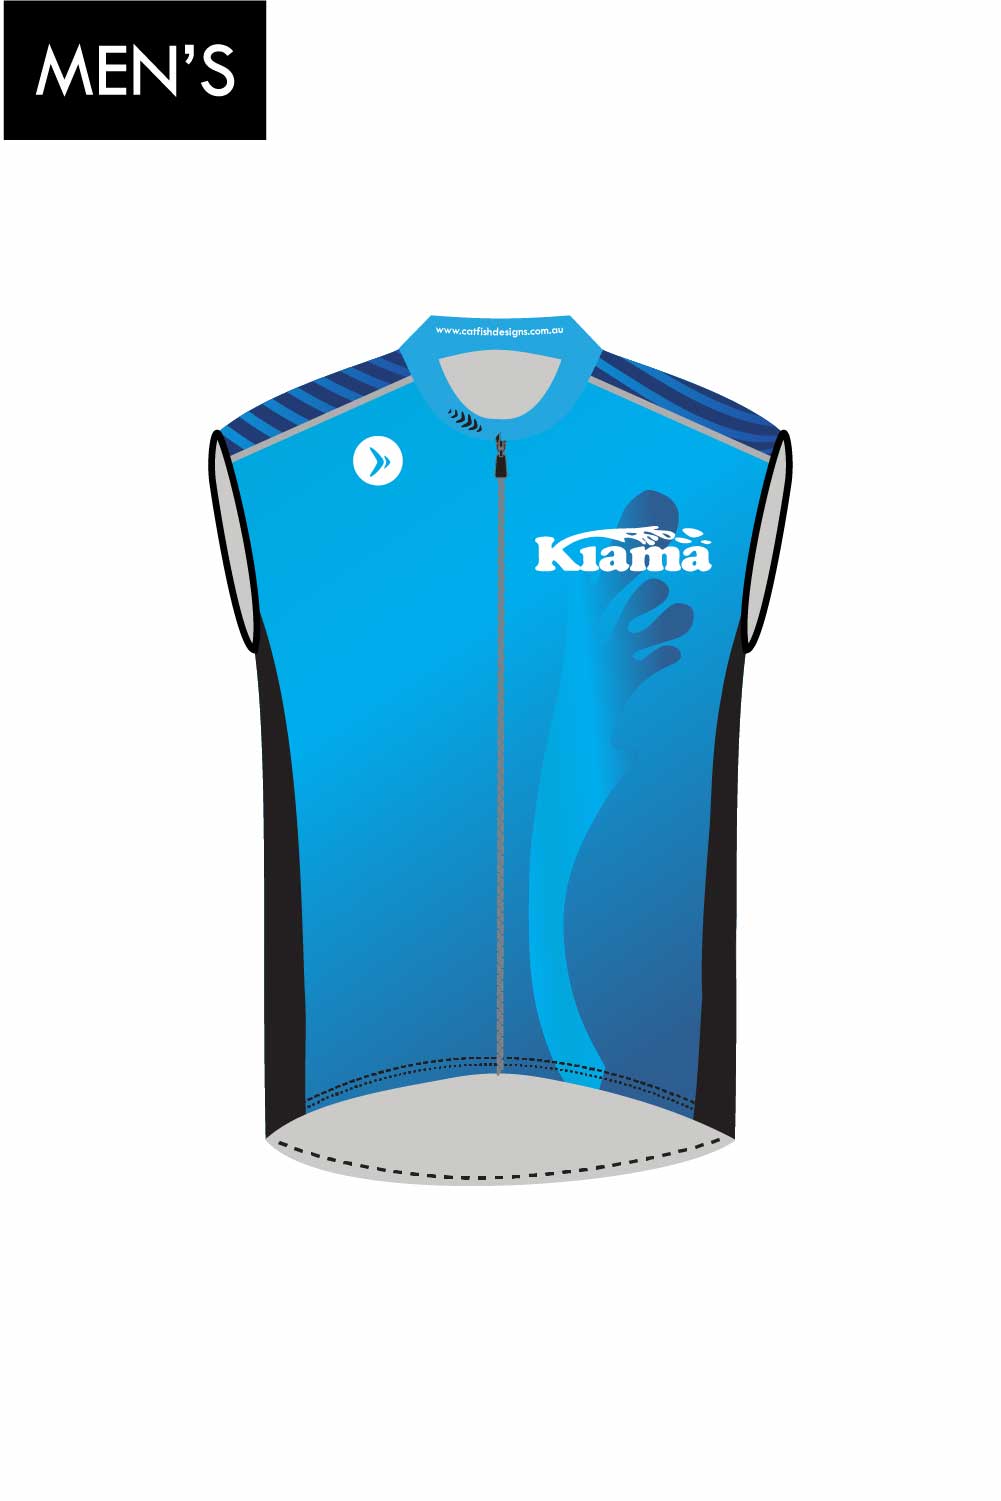 KTC Men's Cycle Vest